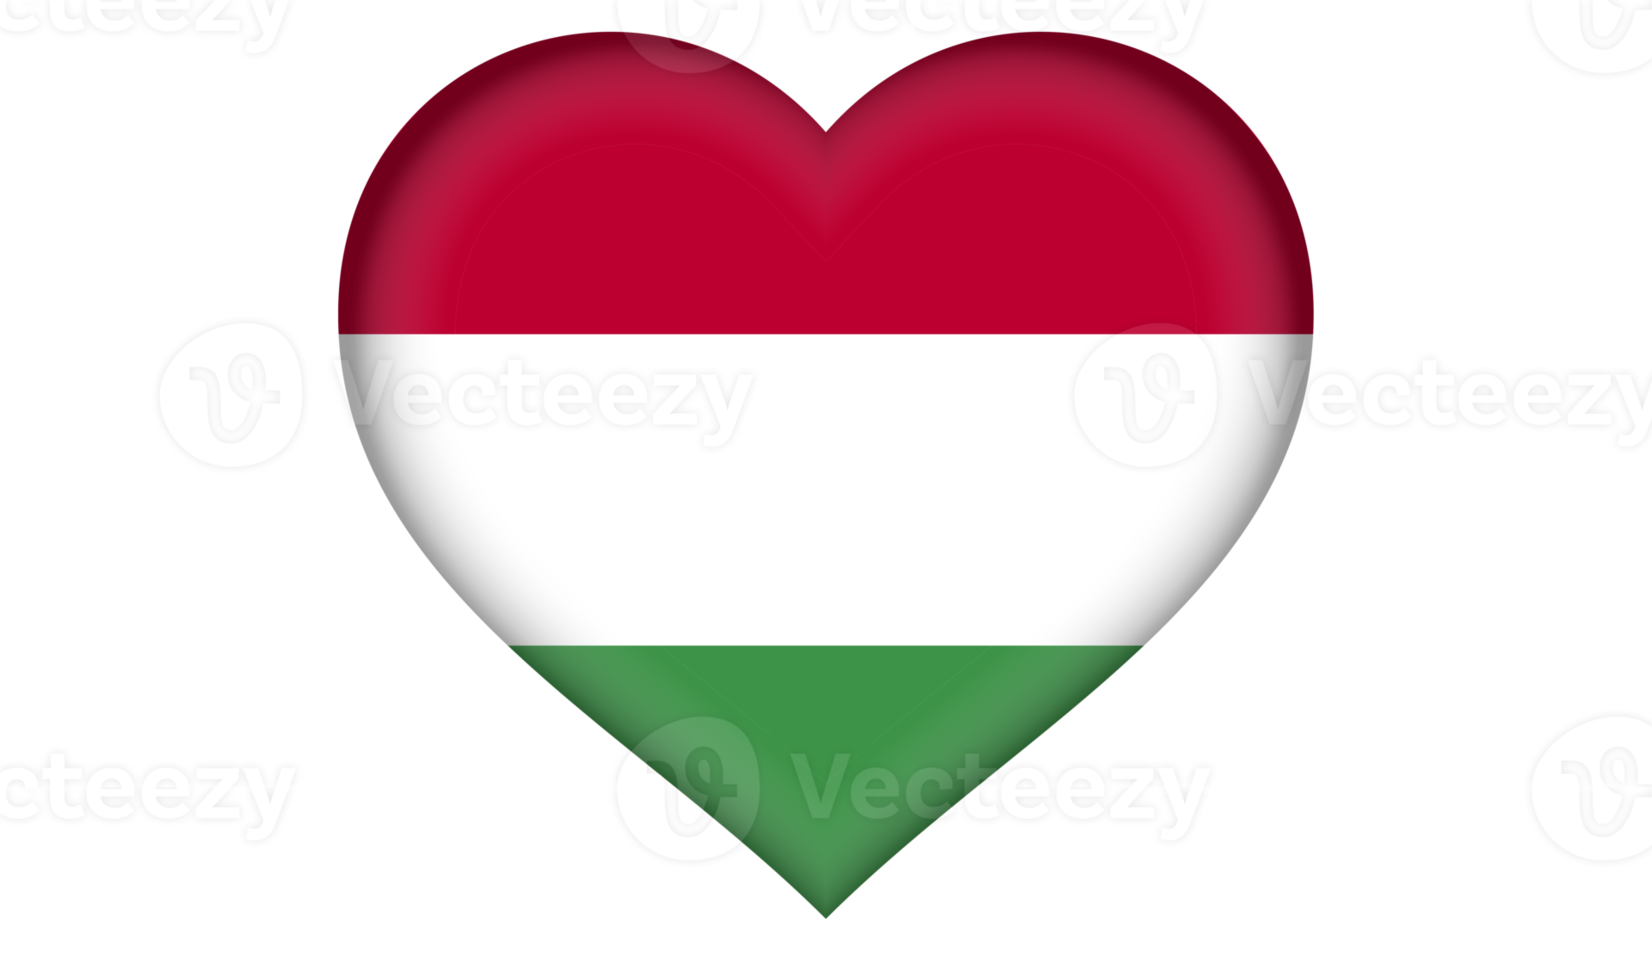 ícone da bandeira da Hungria na forma de um coração png